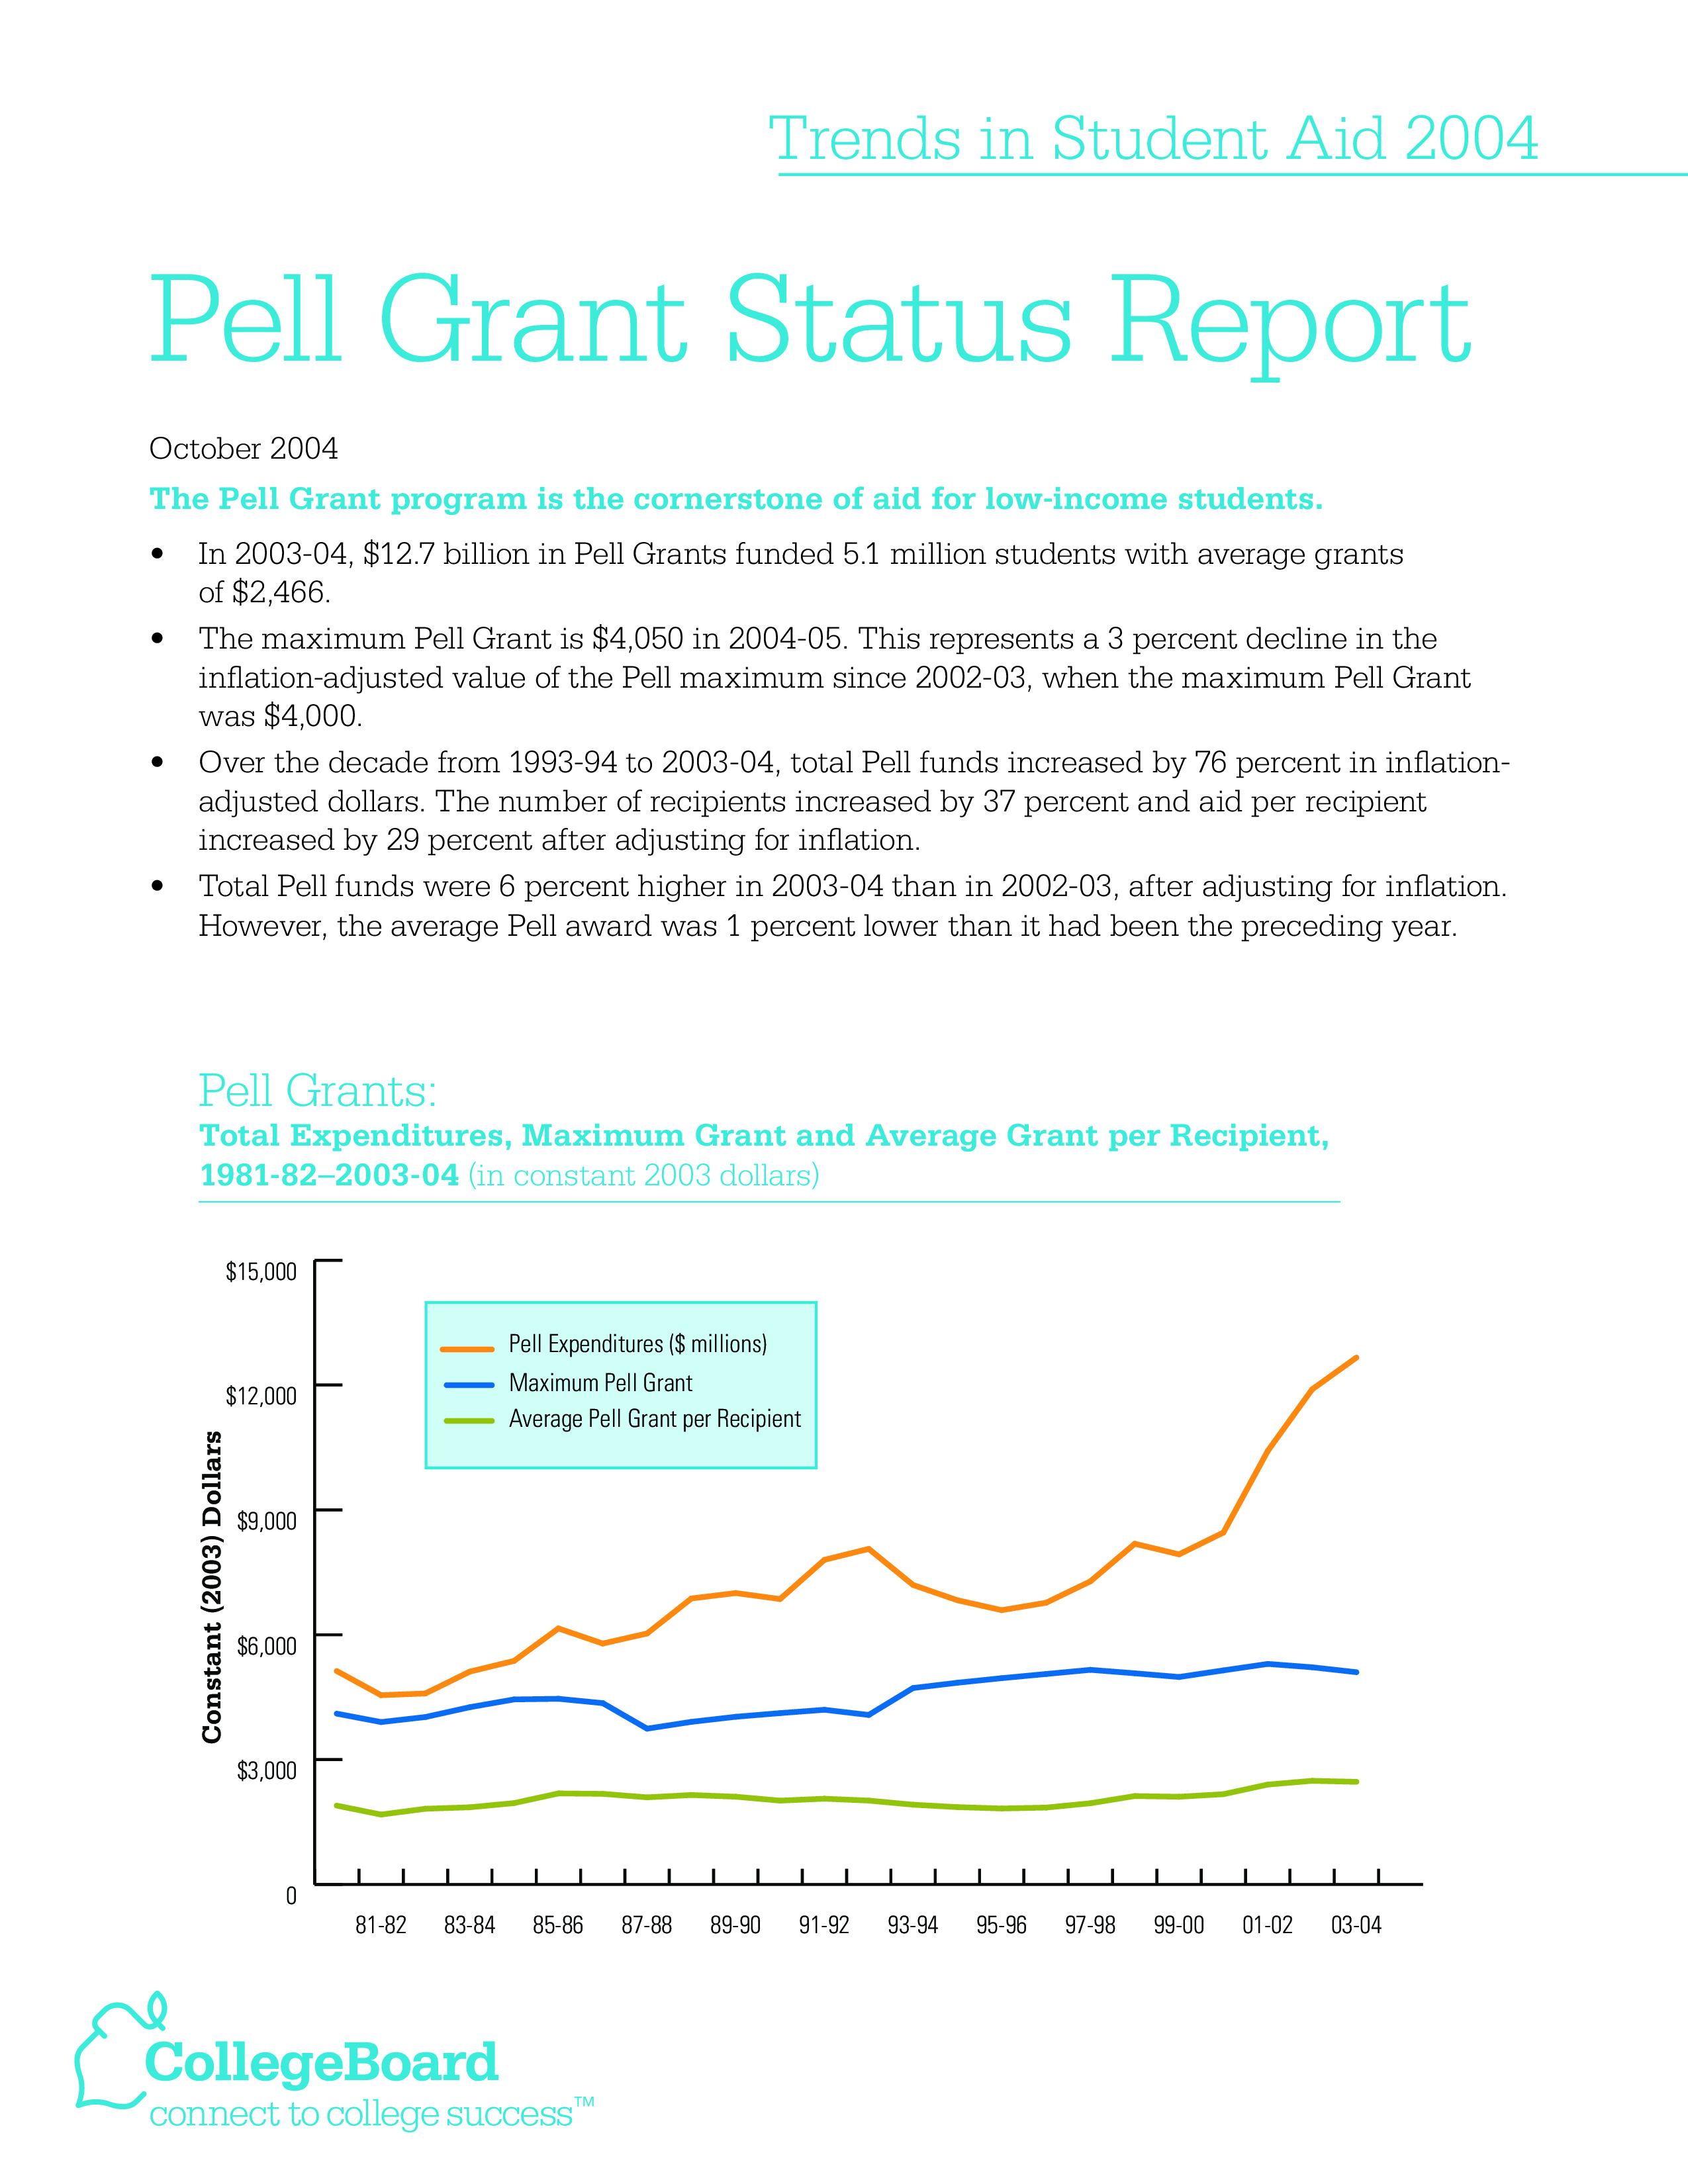 Grant Status Report main image